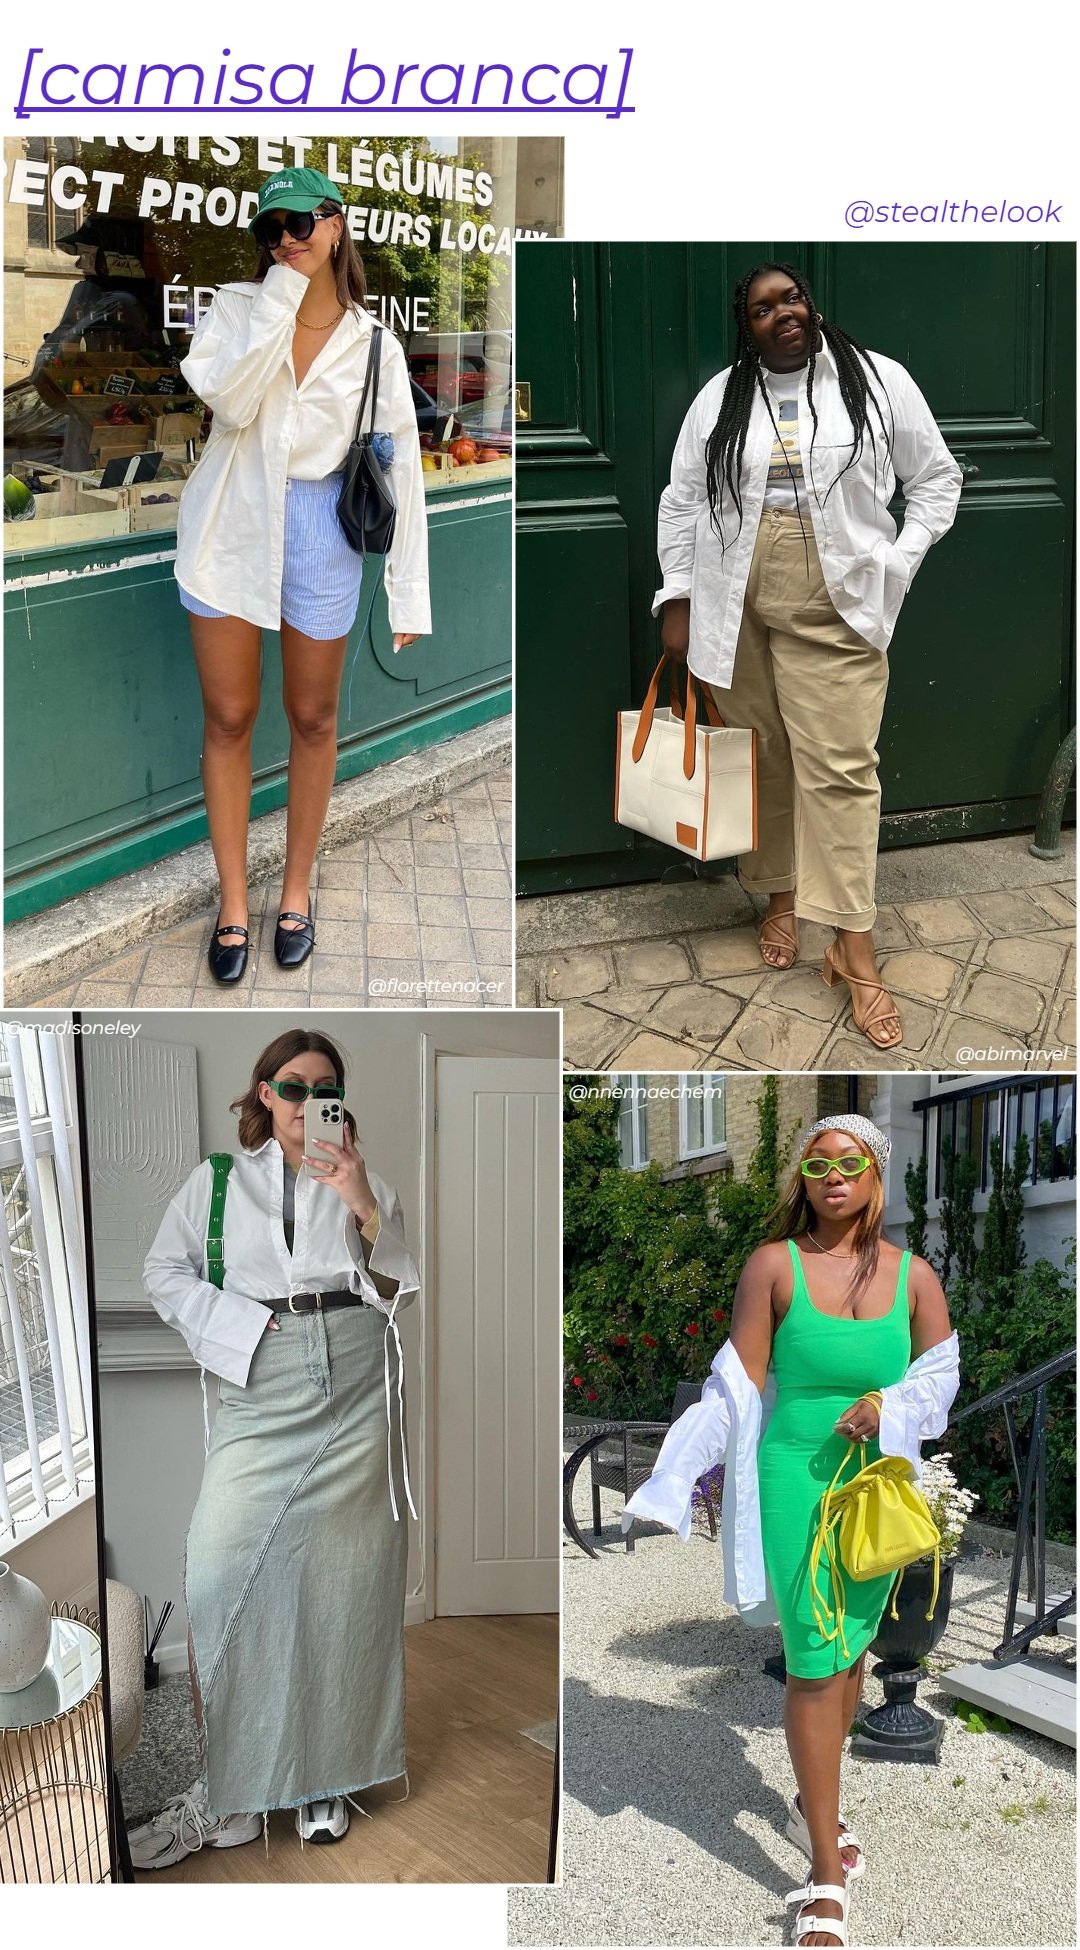 Nnenna Echem, Madison Eley, Abisola Omole e Florette - roupas diversas - peças básicas - verão - colagem de imagens - https://stealthelook.com.br